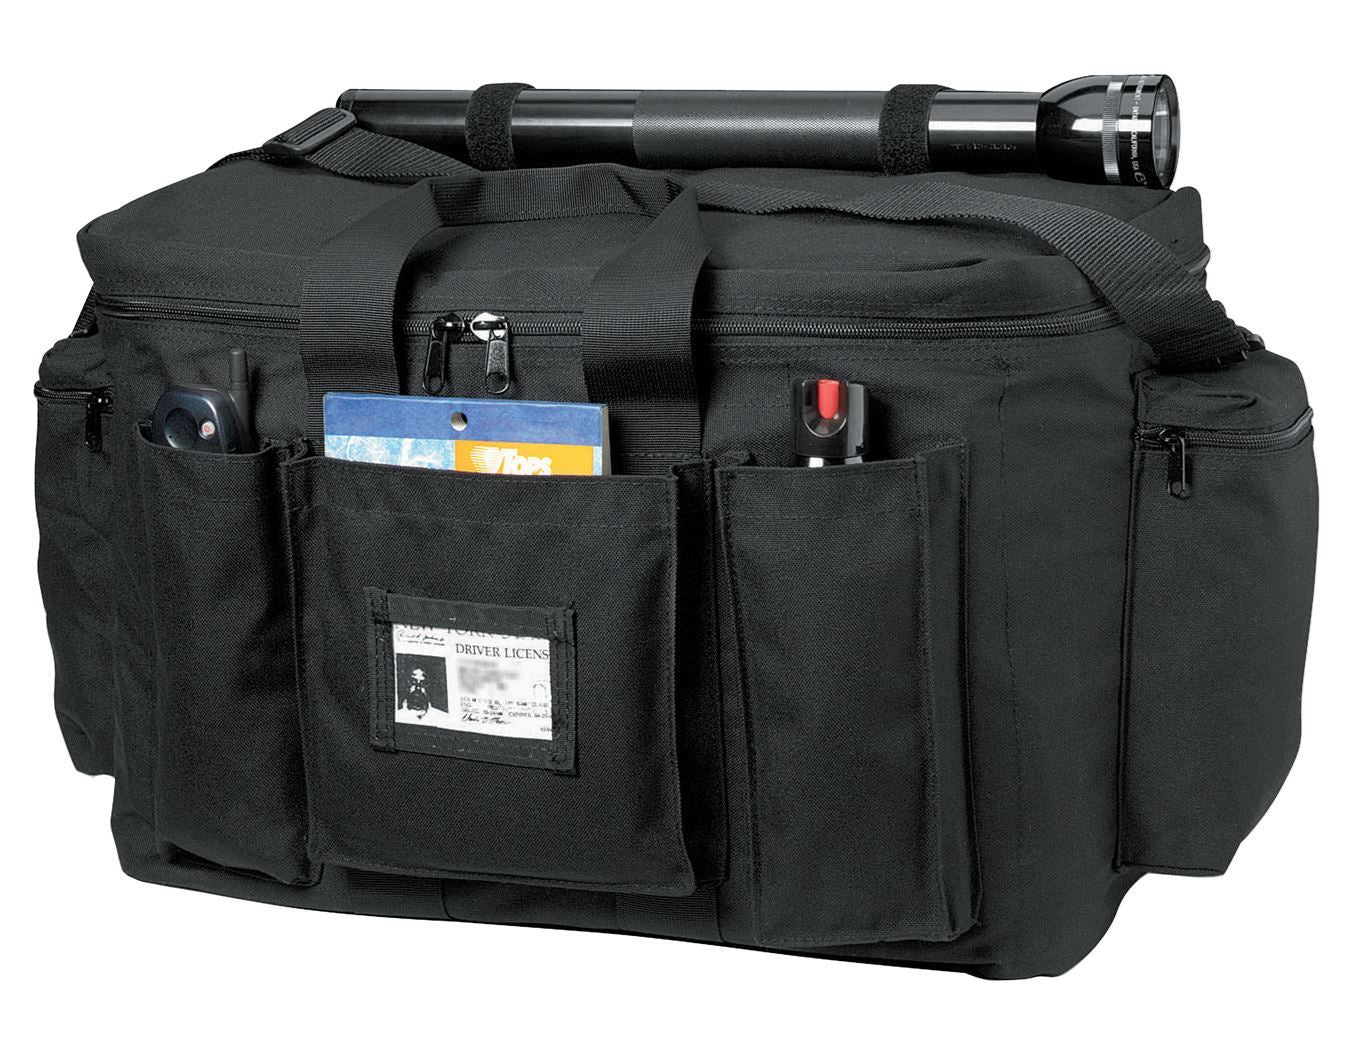 Tactical Police Equipment Gear  Bag - Black. 1 Ea.